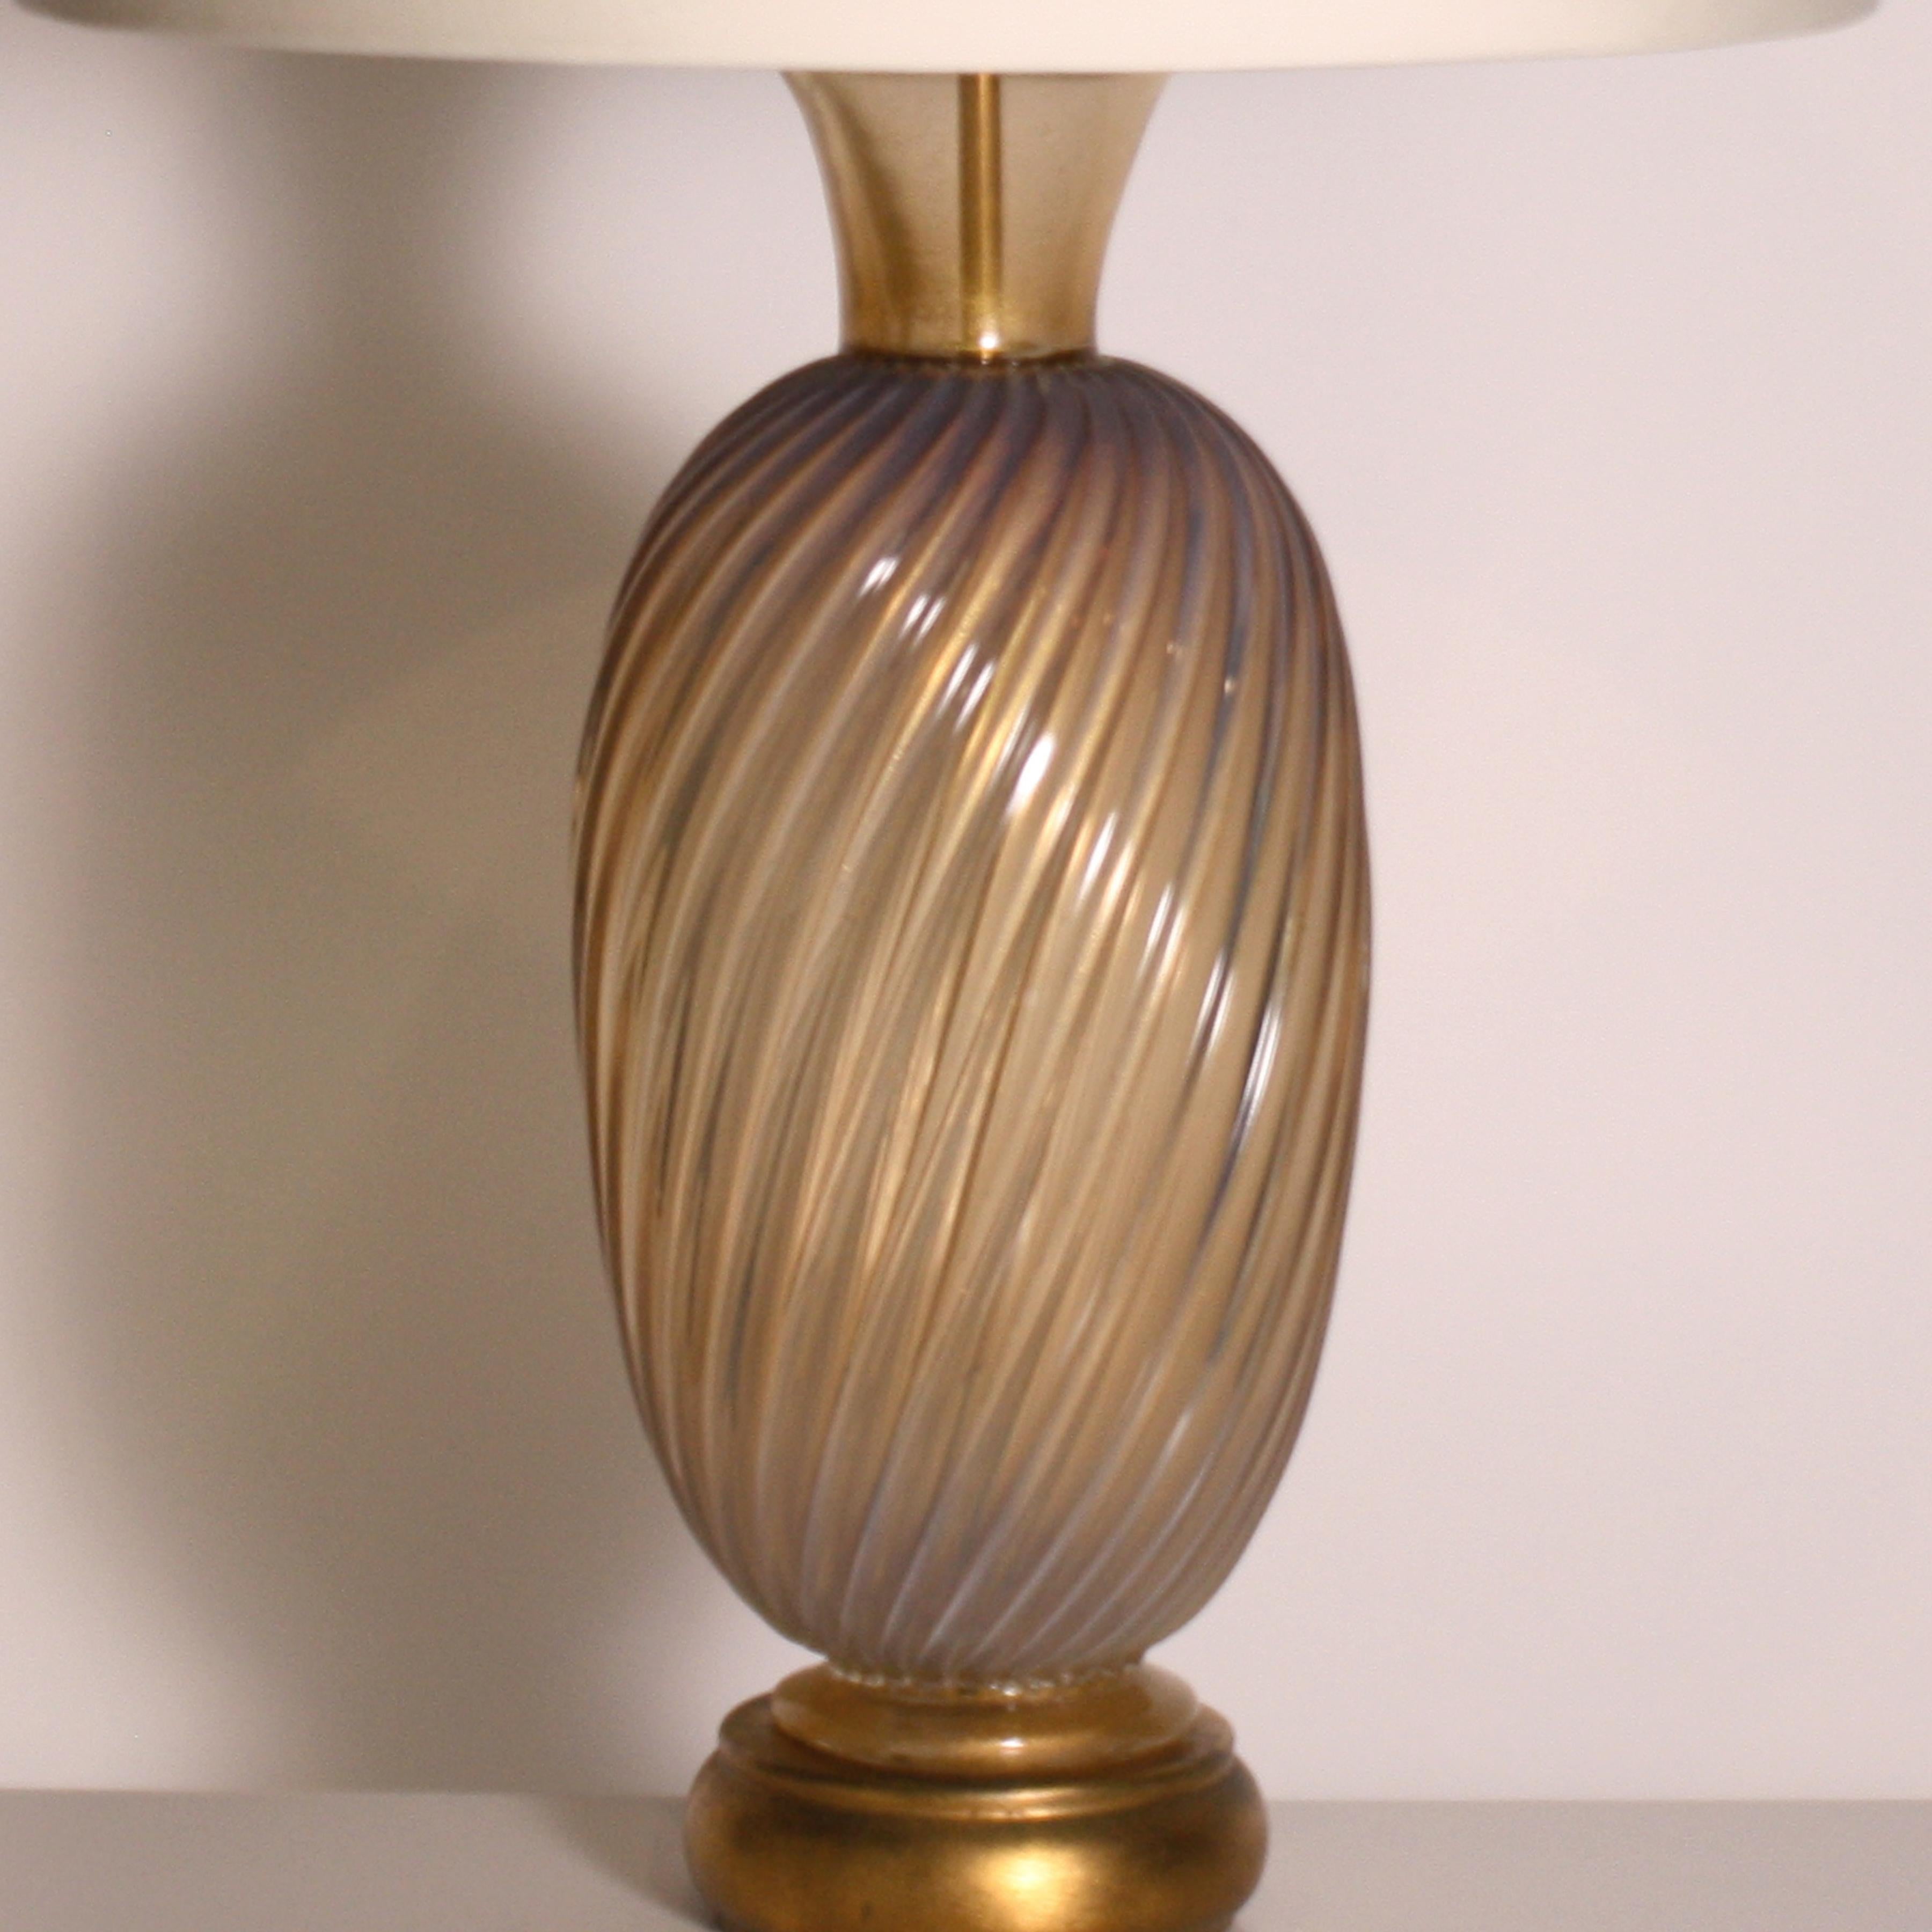 Gold & Opaline Murano lamp, c. 1950.